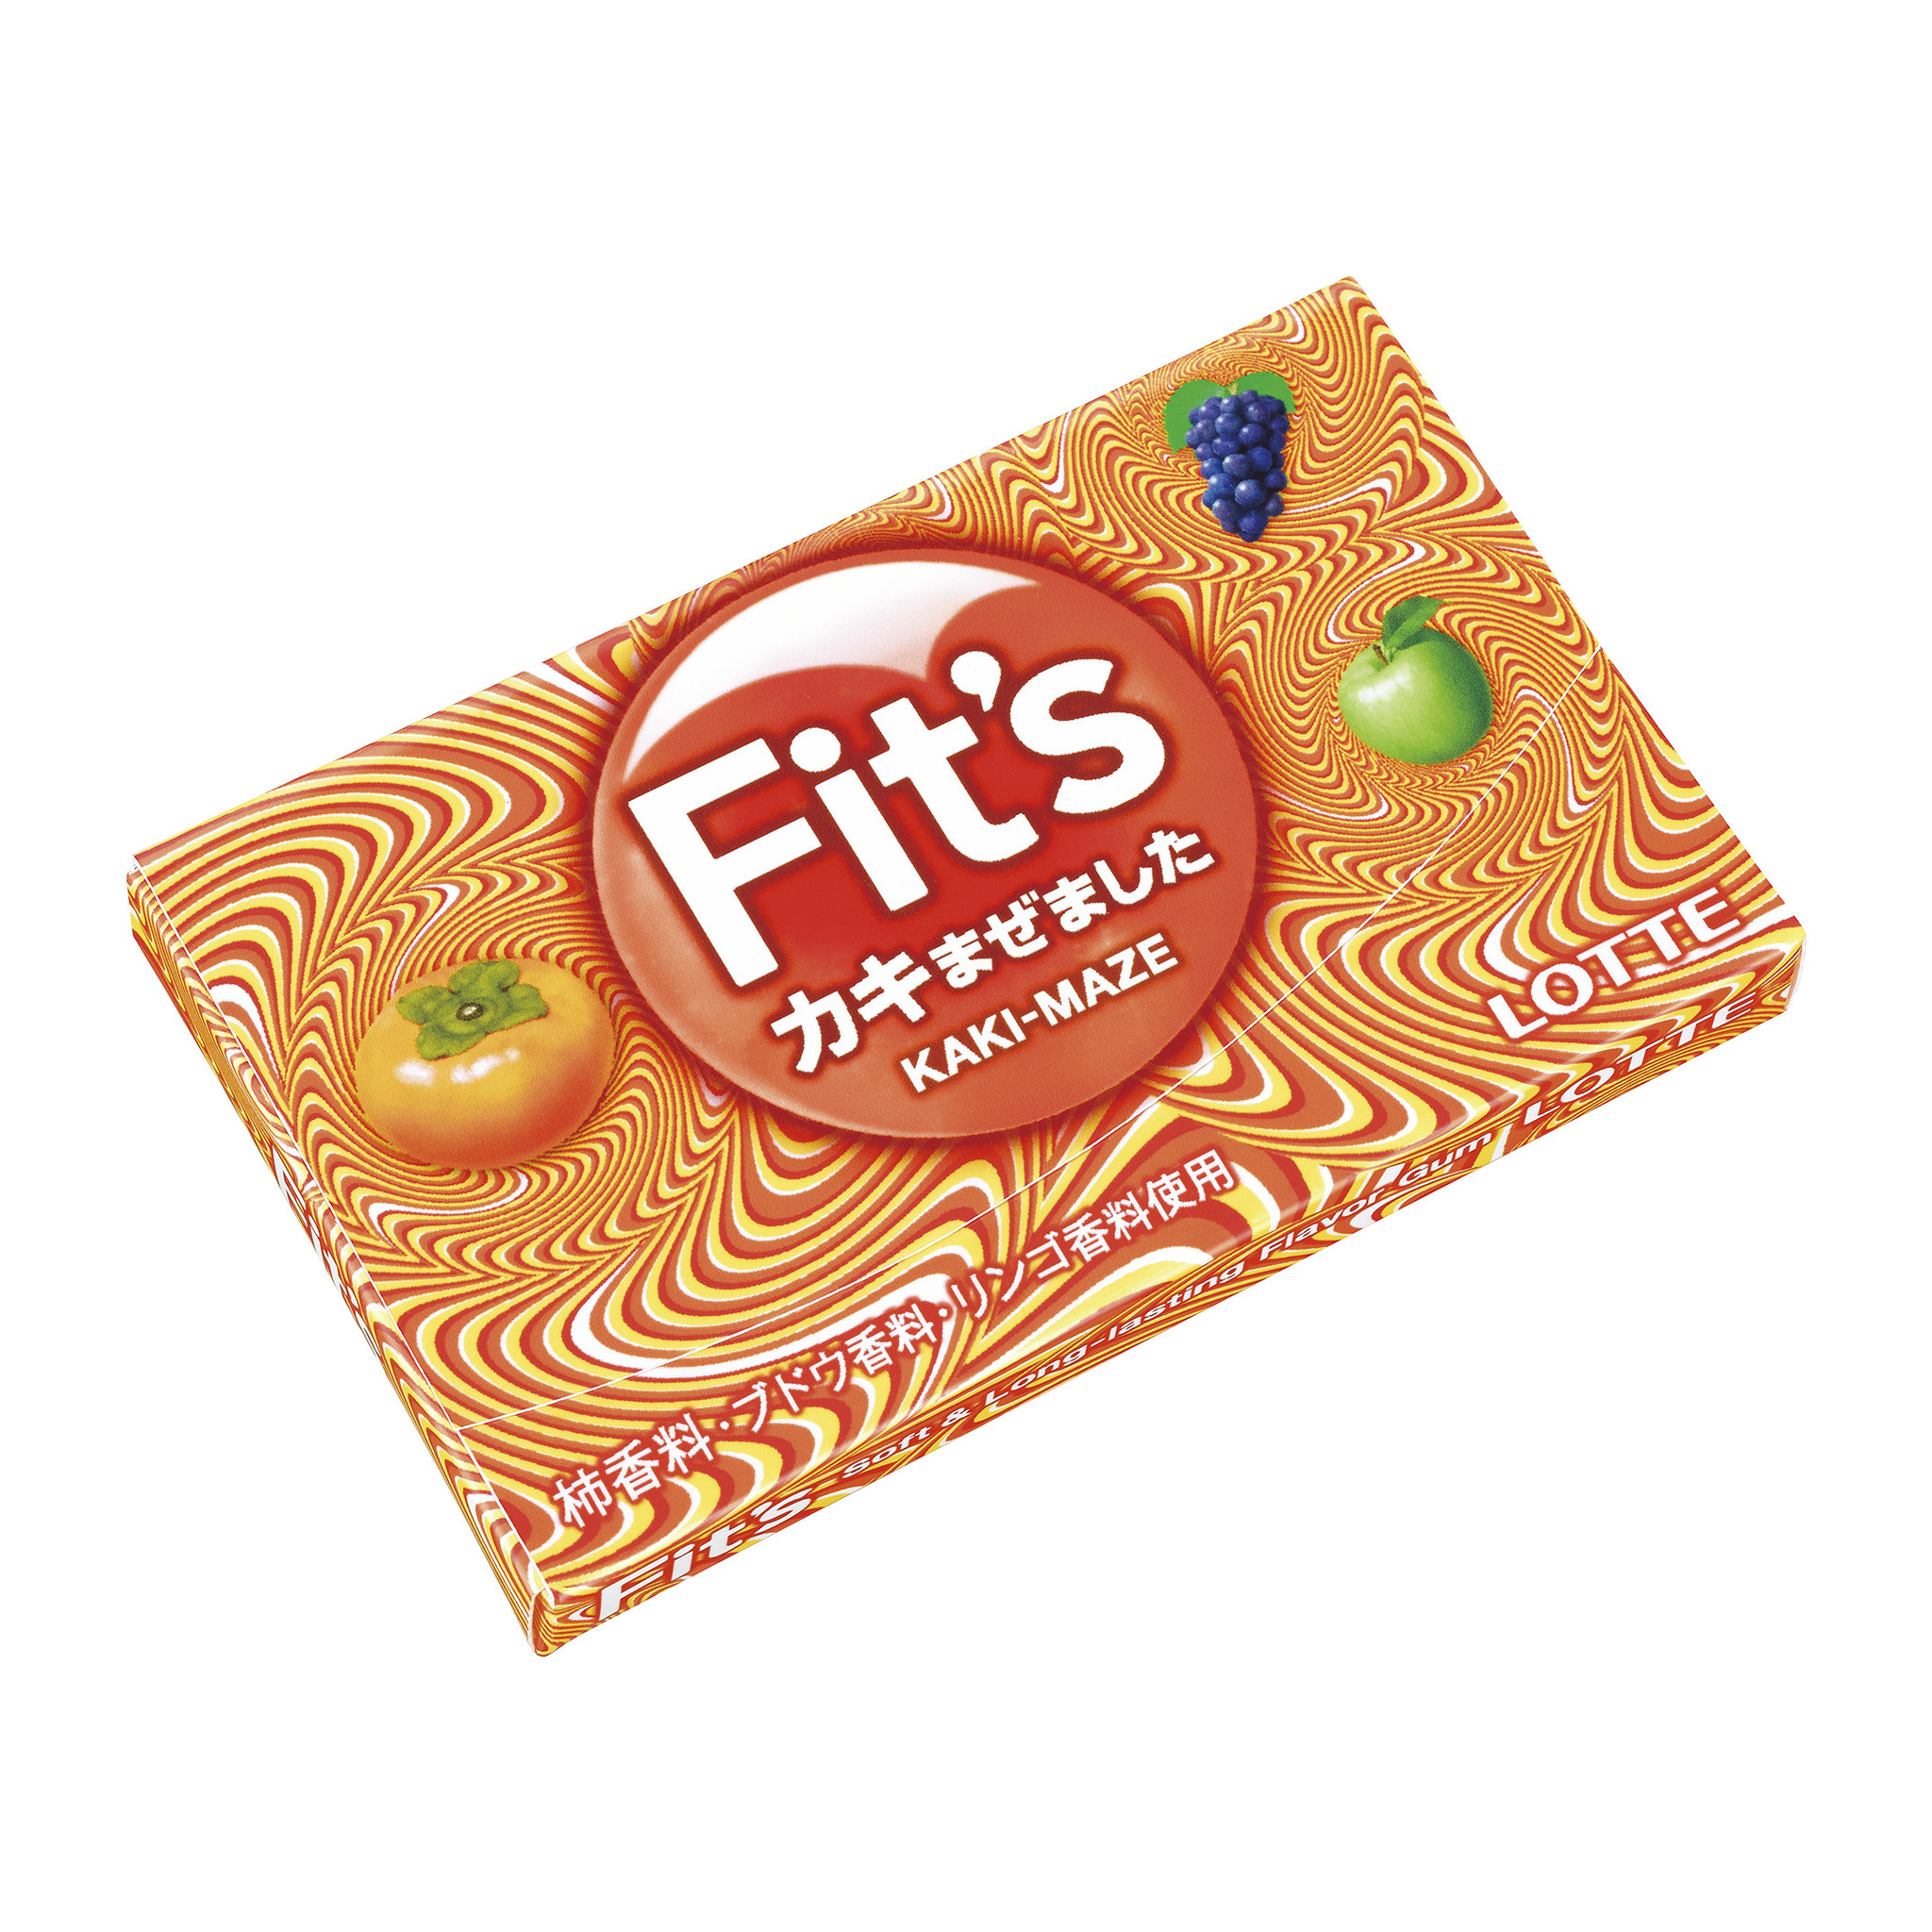 Fit S カキまぜました 13年9月10日 火 から全国で発売 秋の実りをかき混ぜました 株式会社ロッテのプレスリリース